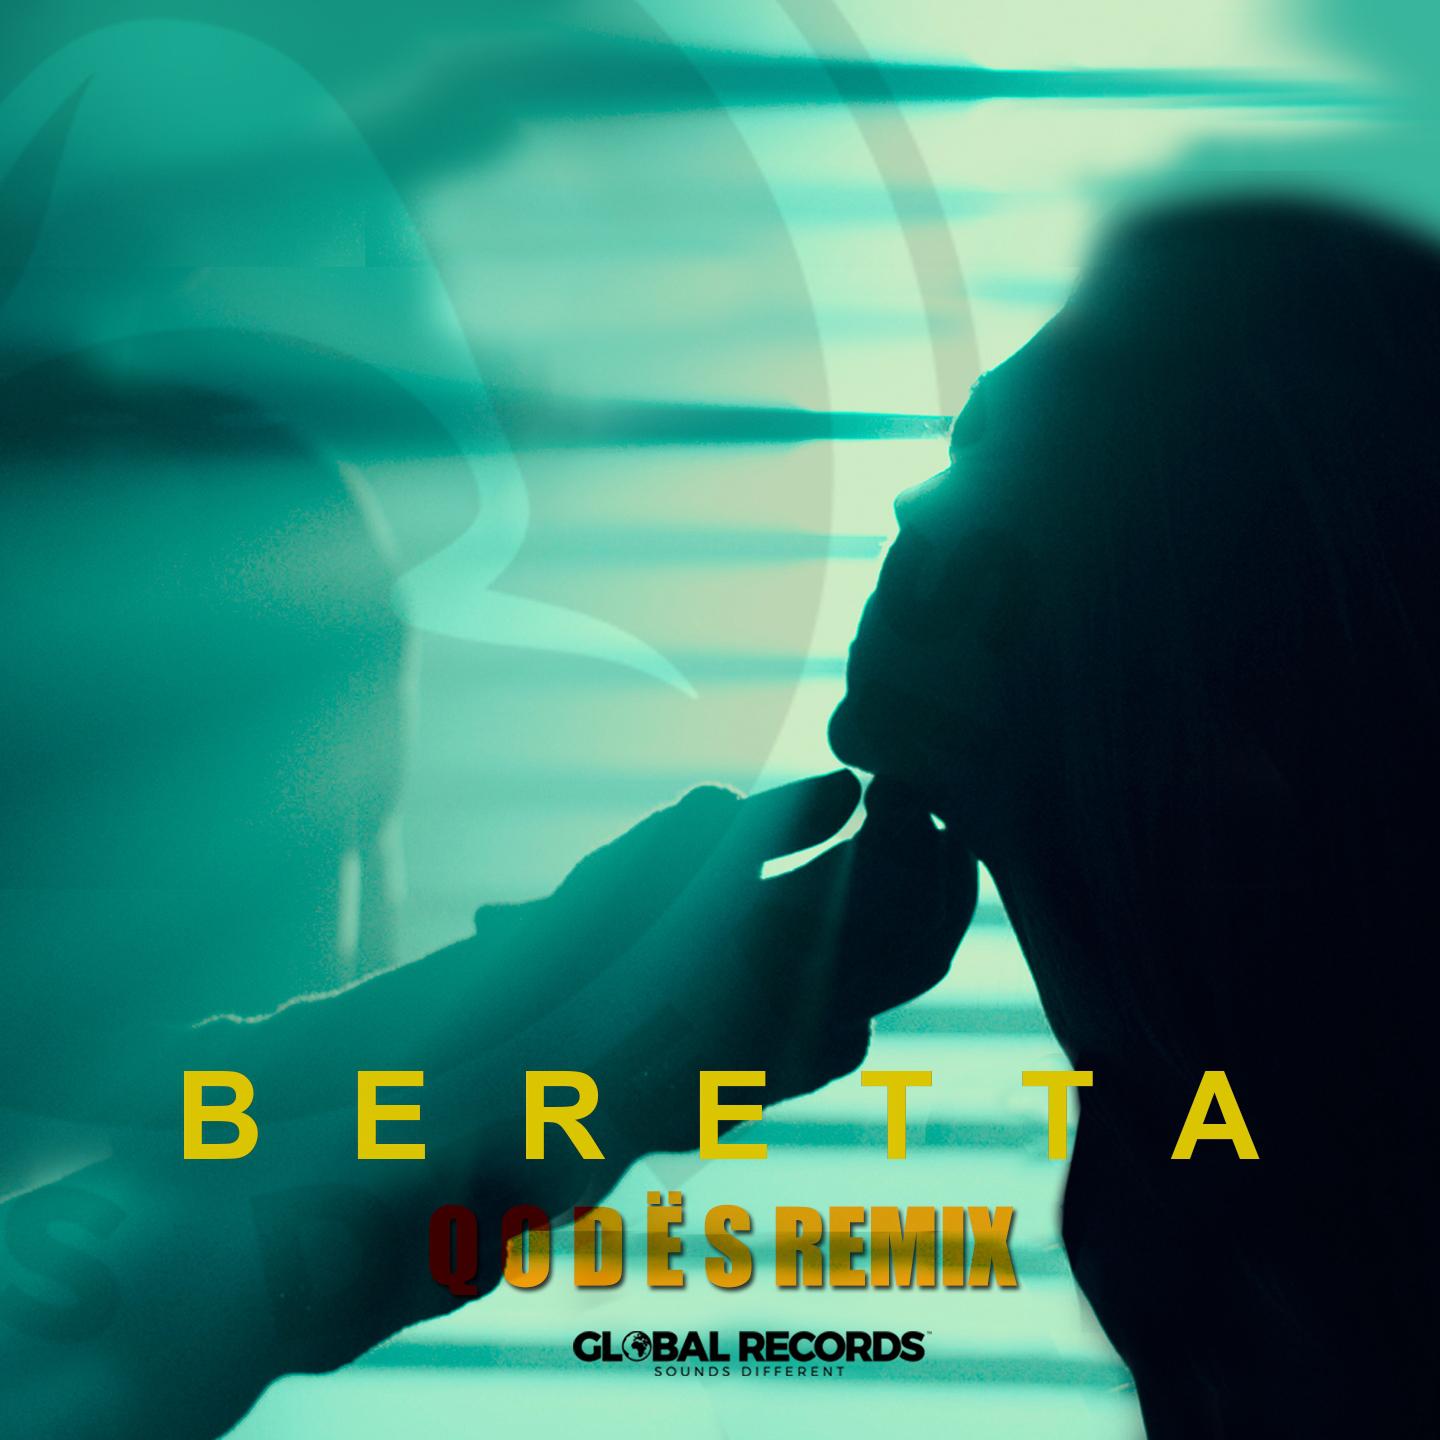 Beretta (Q O D Ë S Remix)专辑